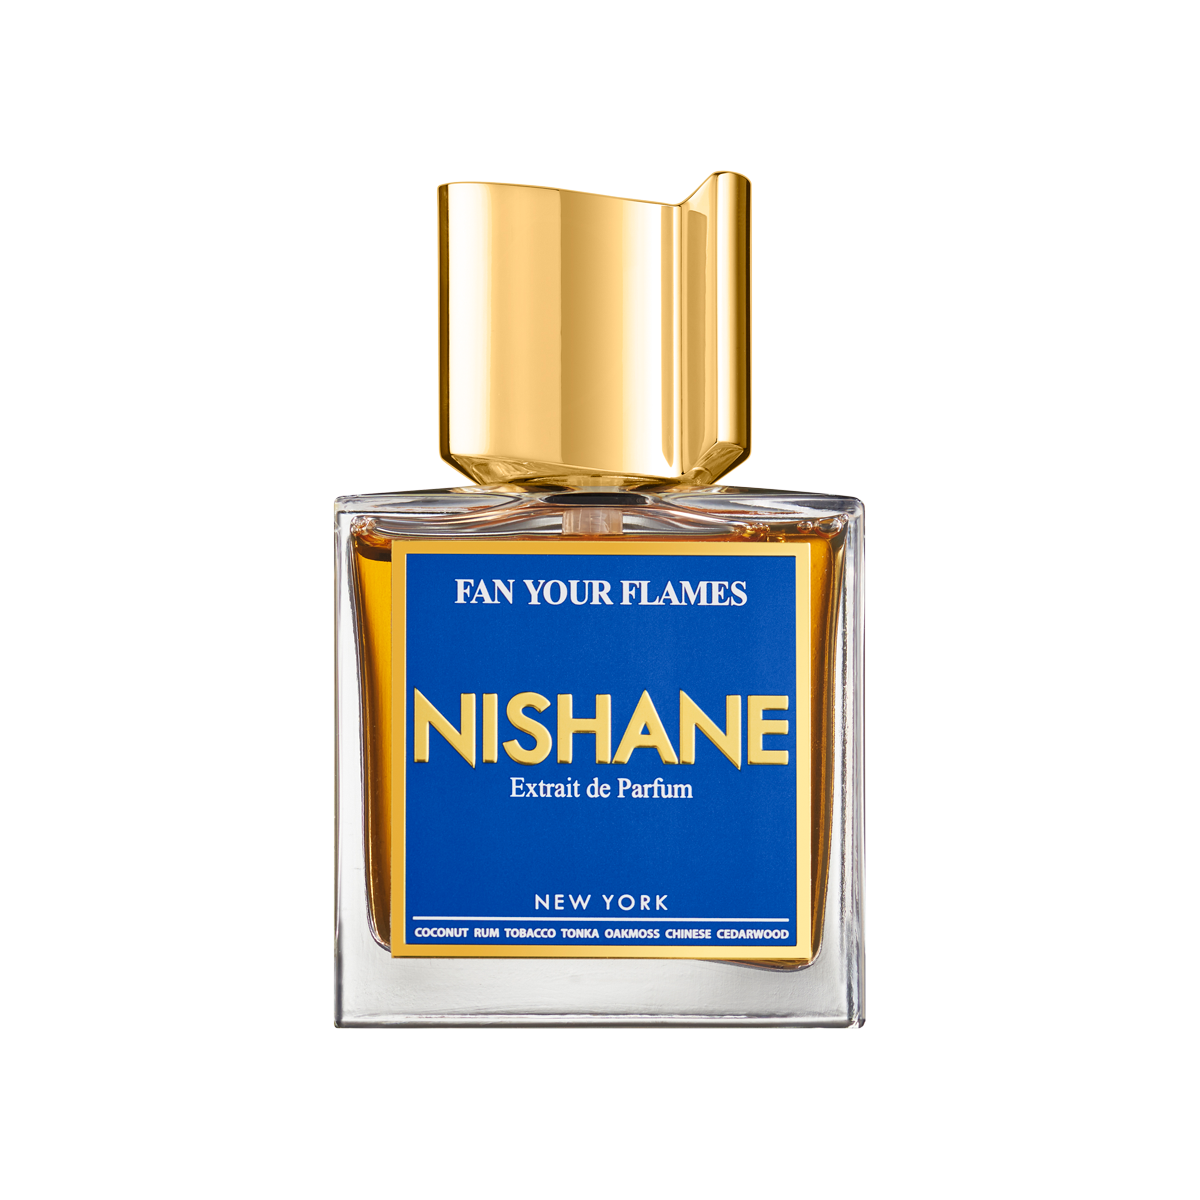 Nishane - Fan Your Flames Extrait de Parfum